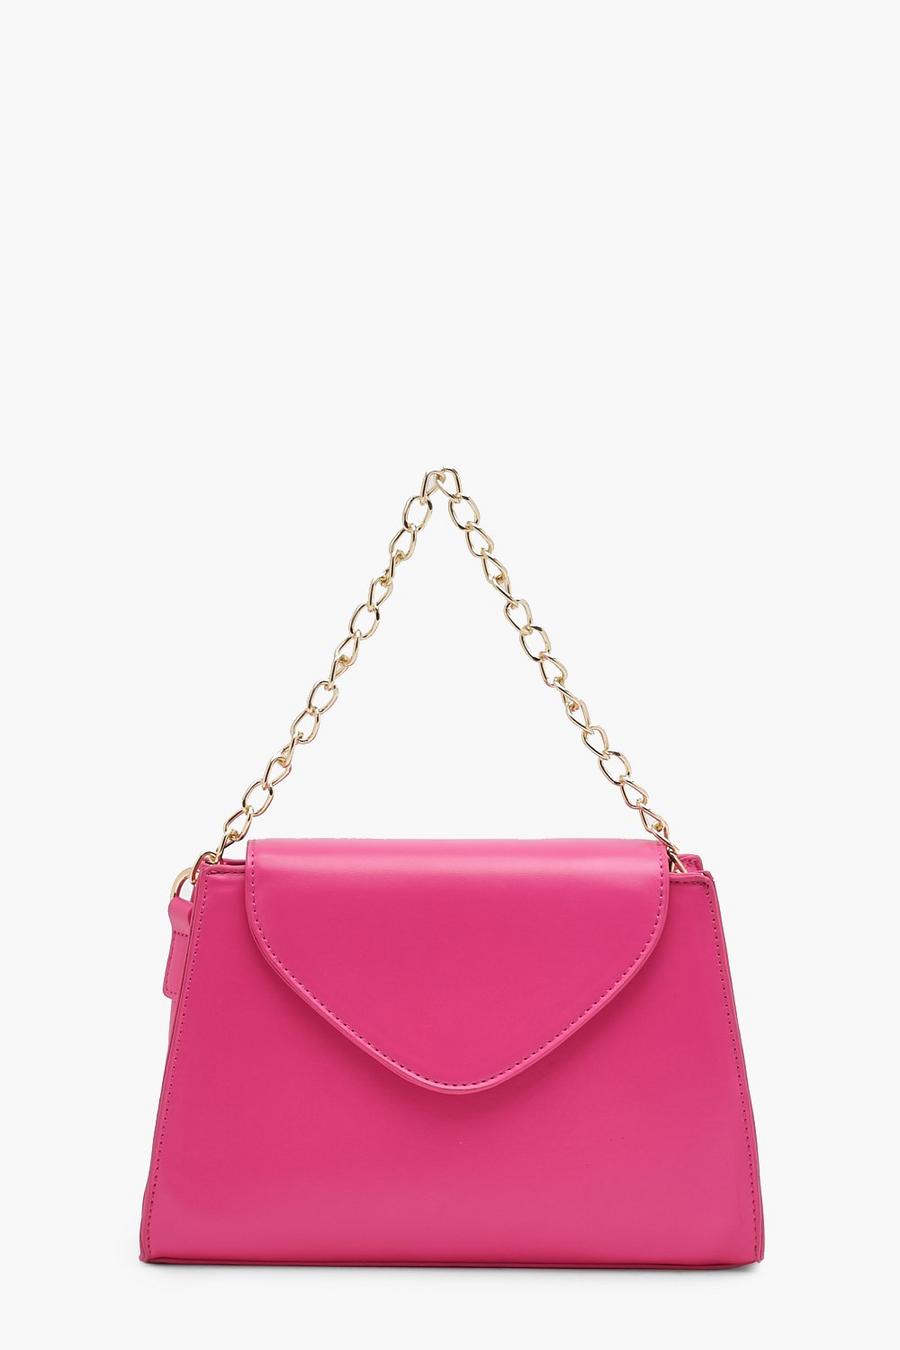 Mini sac à main avec chaîne épaisse, Hot pink image number 1